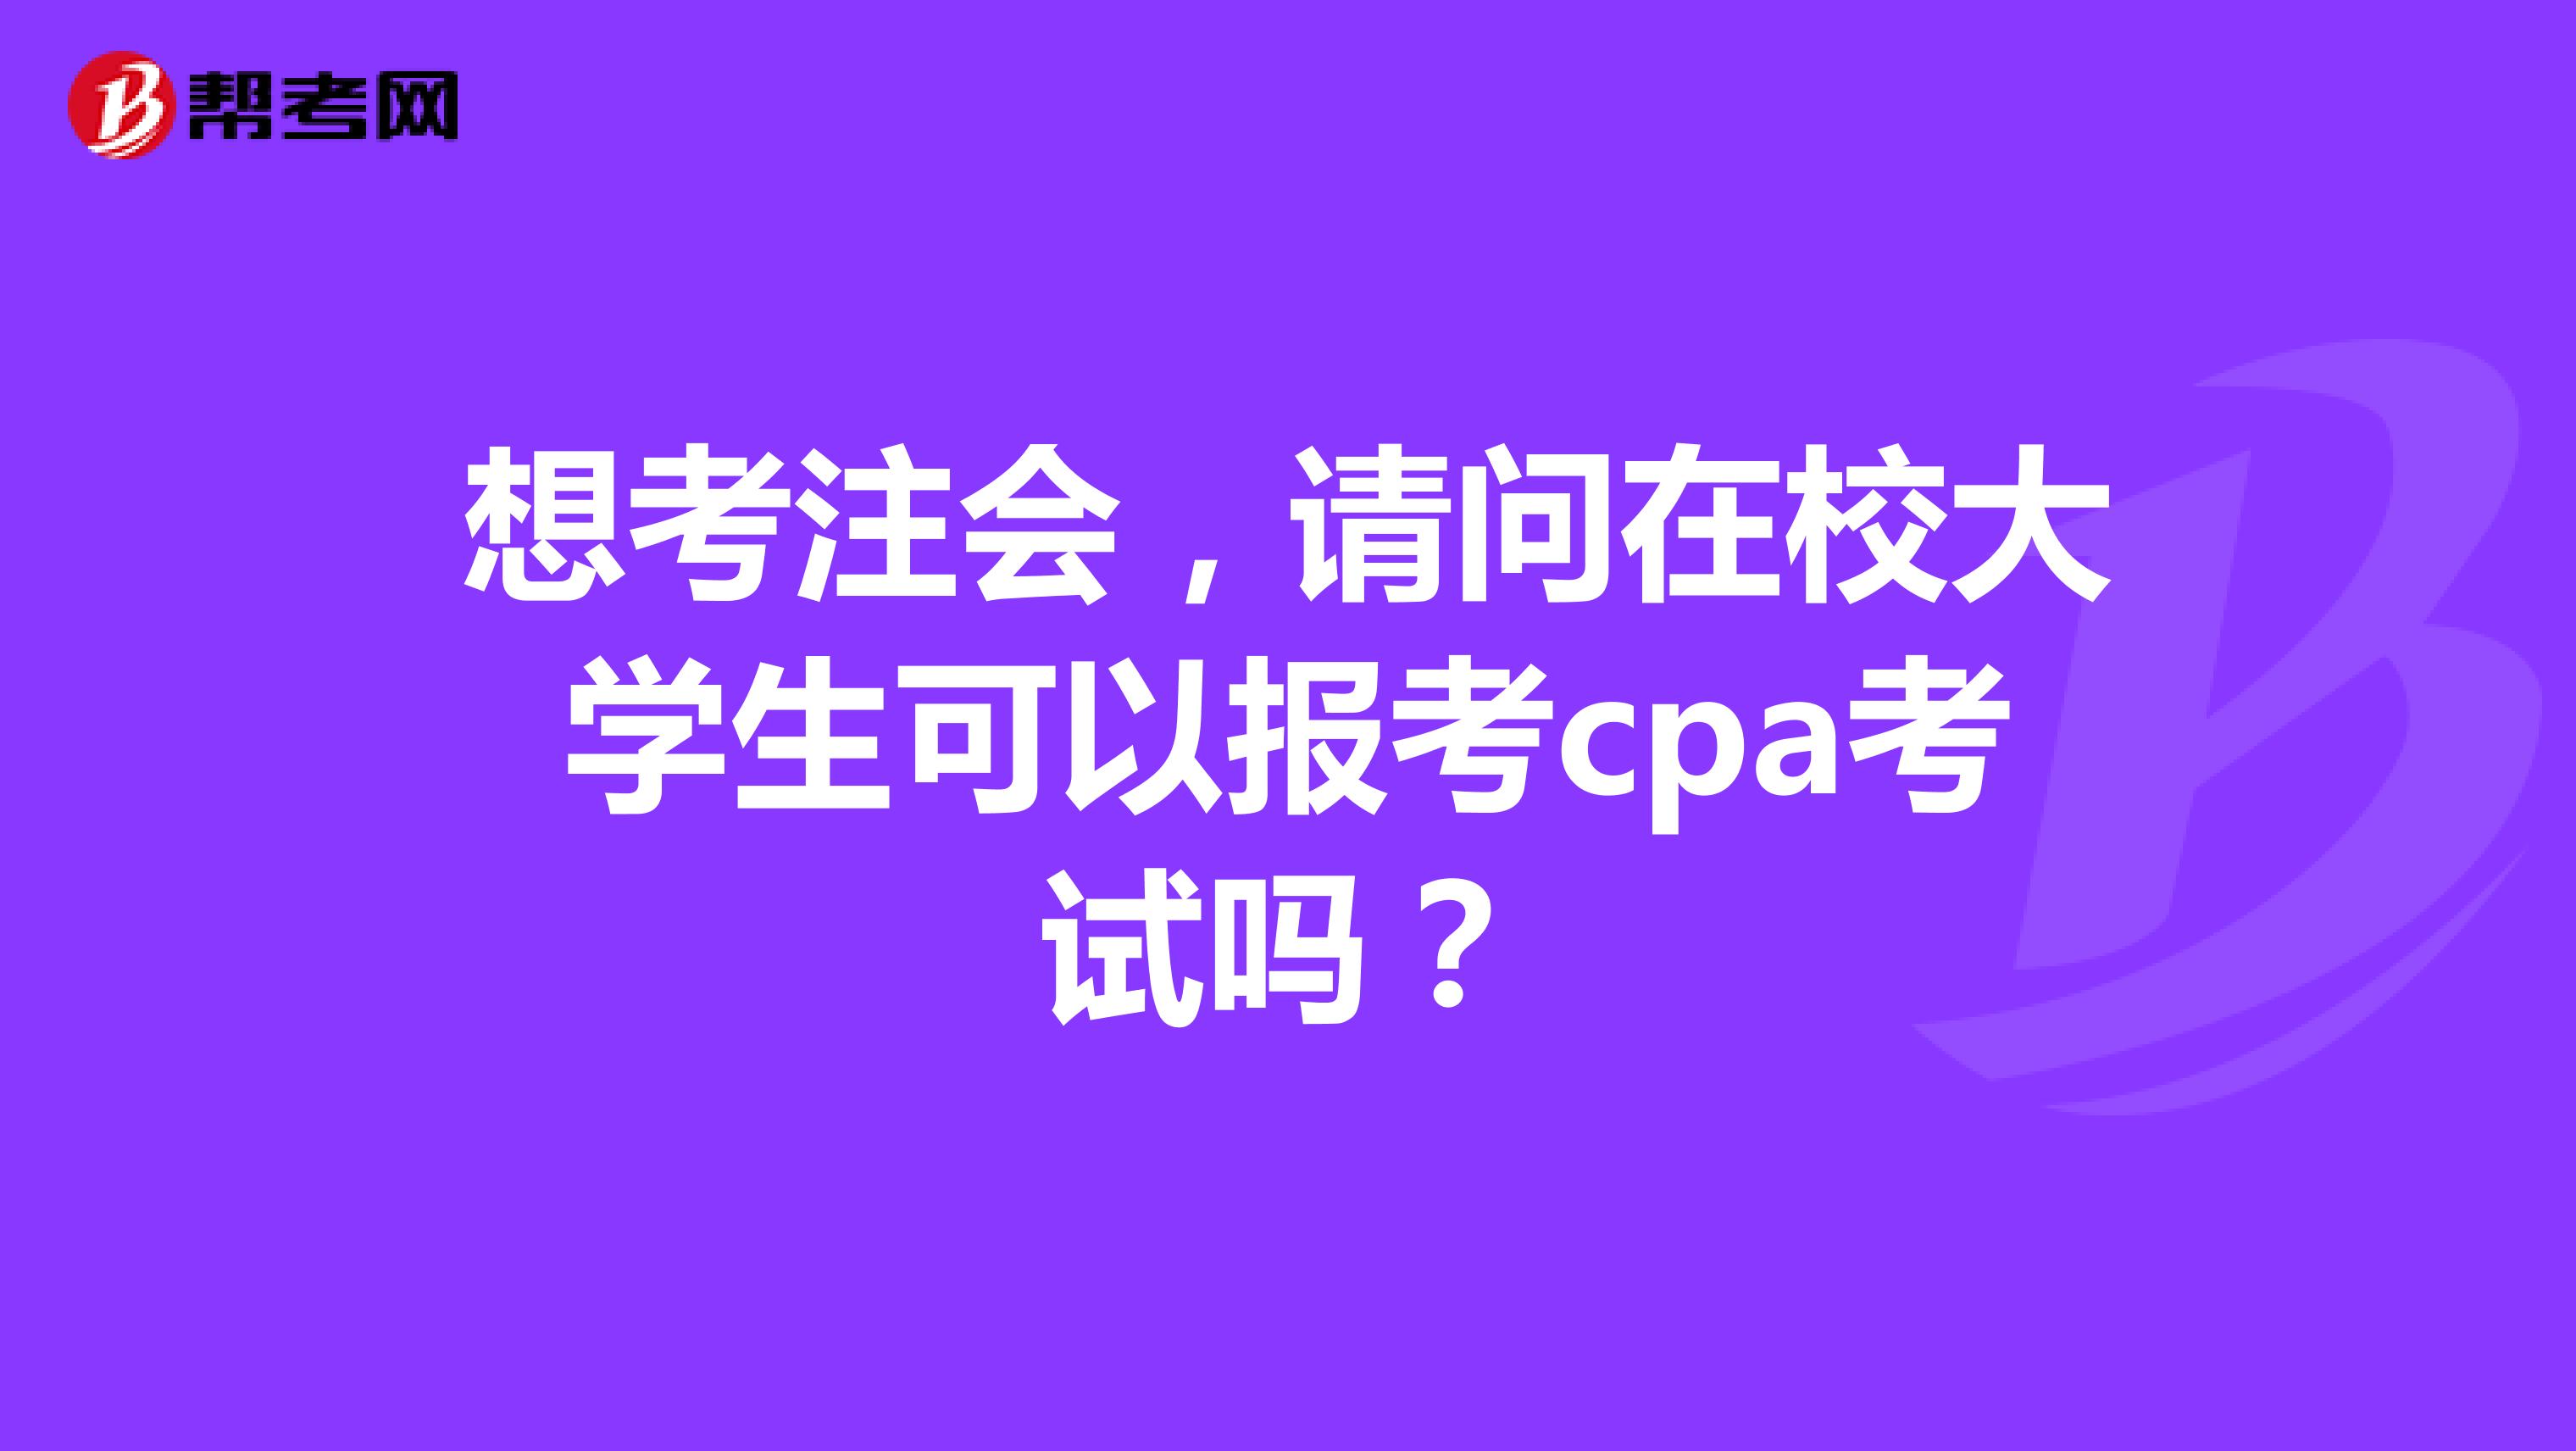 想考注会，请问在校大学生可以报考cpa考试吗？